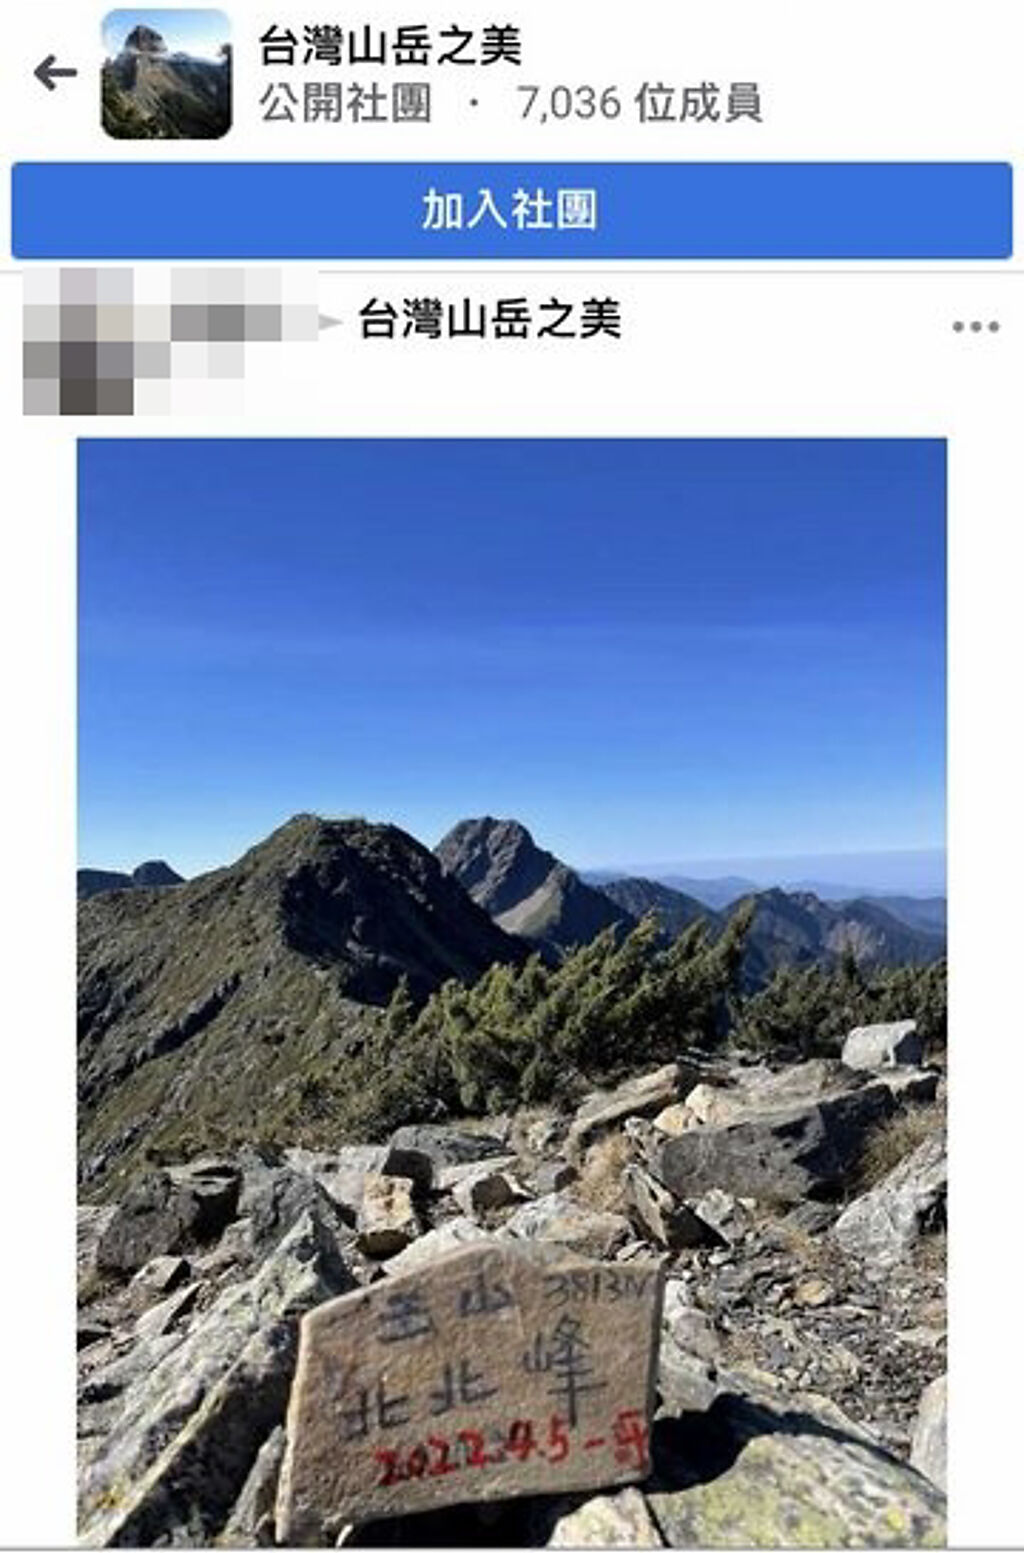 1名男網友日前爬玉山，竟在多處標高石牌、鐵牌處留下塗鴉寫上日期並署名「一哥」，隨即遭大批網友砲轟。（翻攝自臉書社團「台灣山岳之美」）